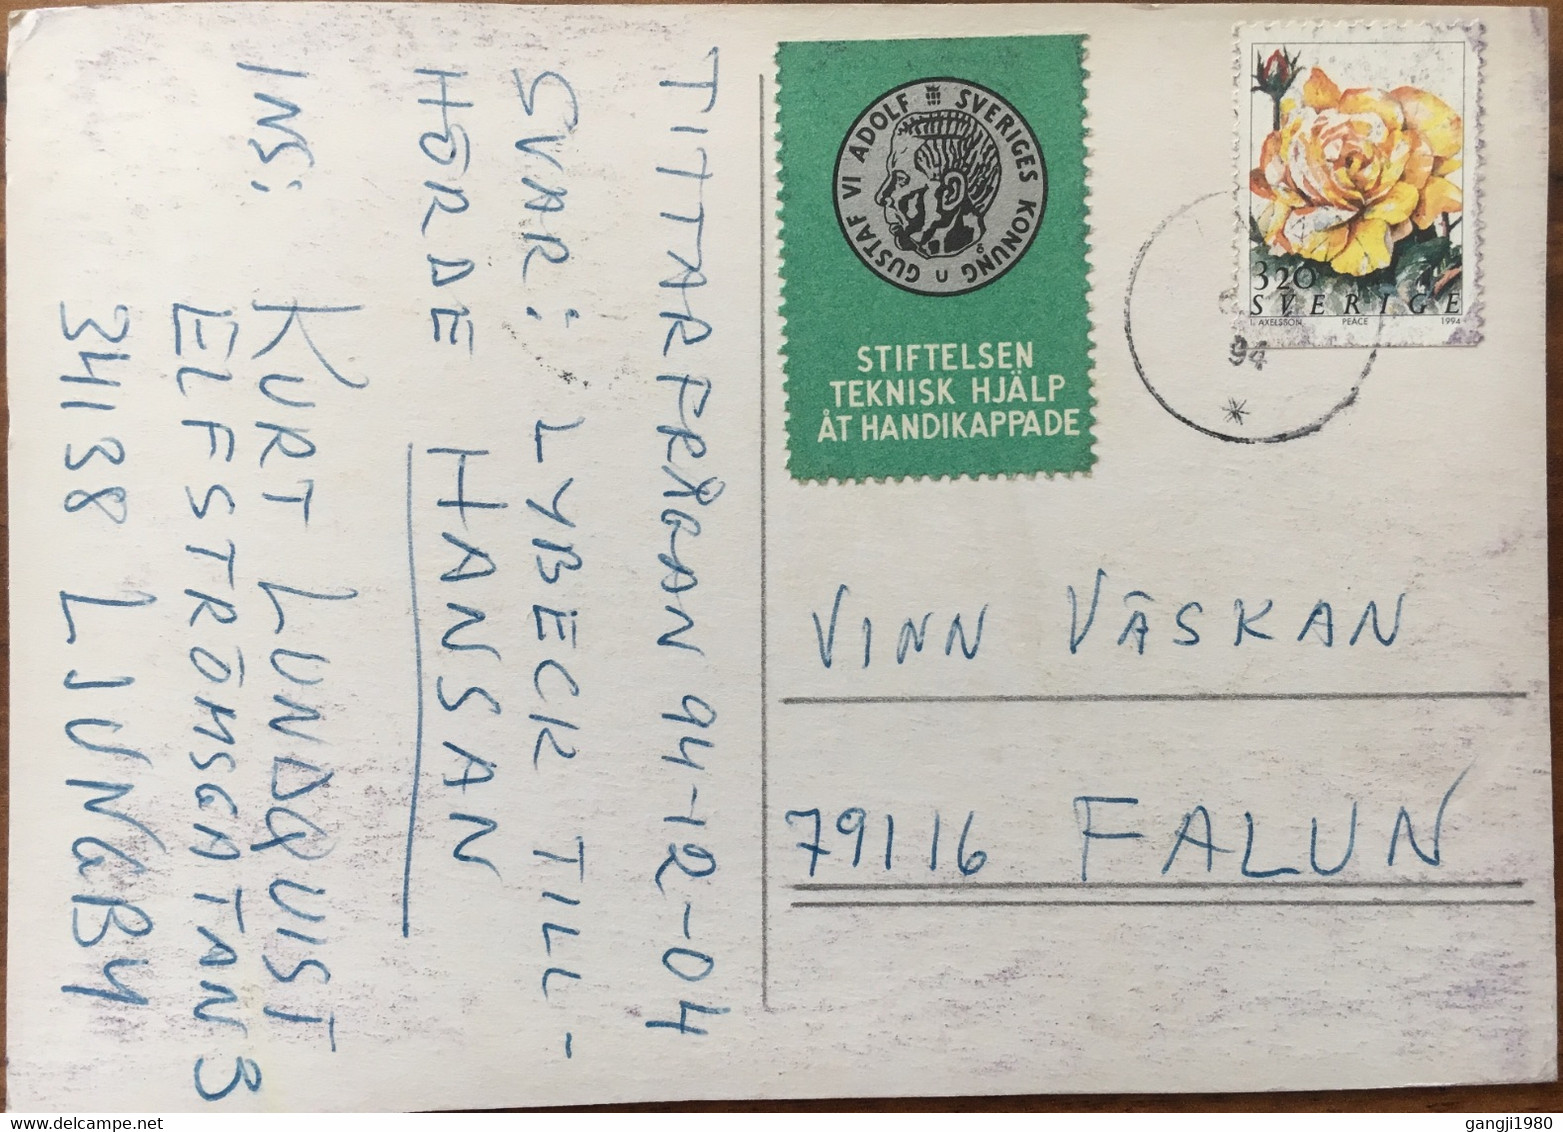 SWEDEN 1994, VIGNETTE KING GUSTAF VIADOLE ,STIFTELSEN IEKNISK HIJALP AT HANDIKAPPADE CINDRELA ,RELLOW ROSE STAMP ON POST - Storia Postale